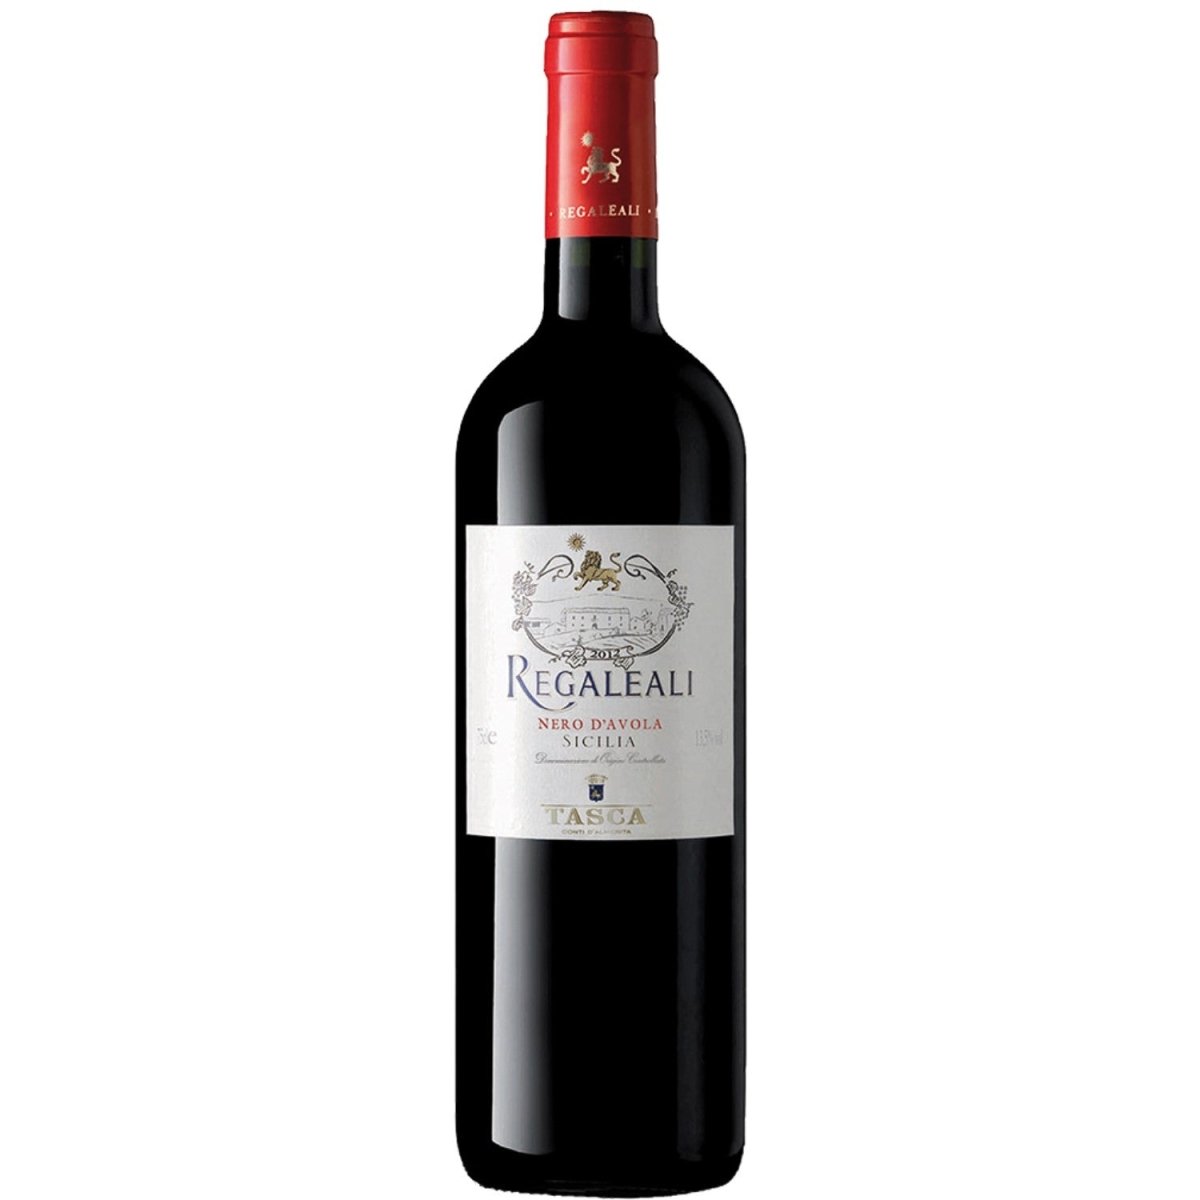 Regaleali Nero d'Avola Tasca d'Almerita DOC Rotwein Wein trocken Italien (6 x 0,75l) - Versanel -